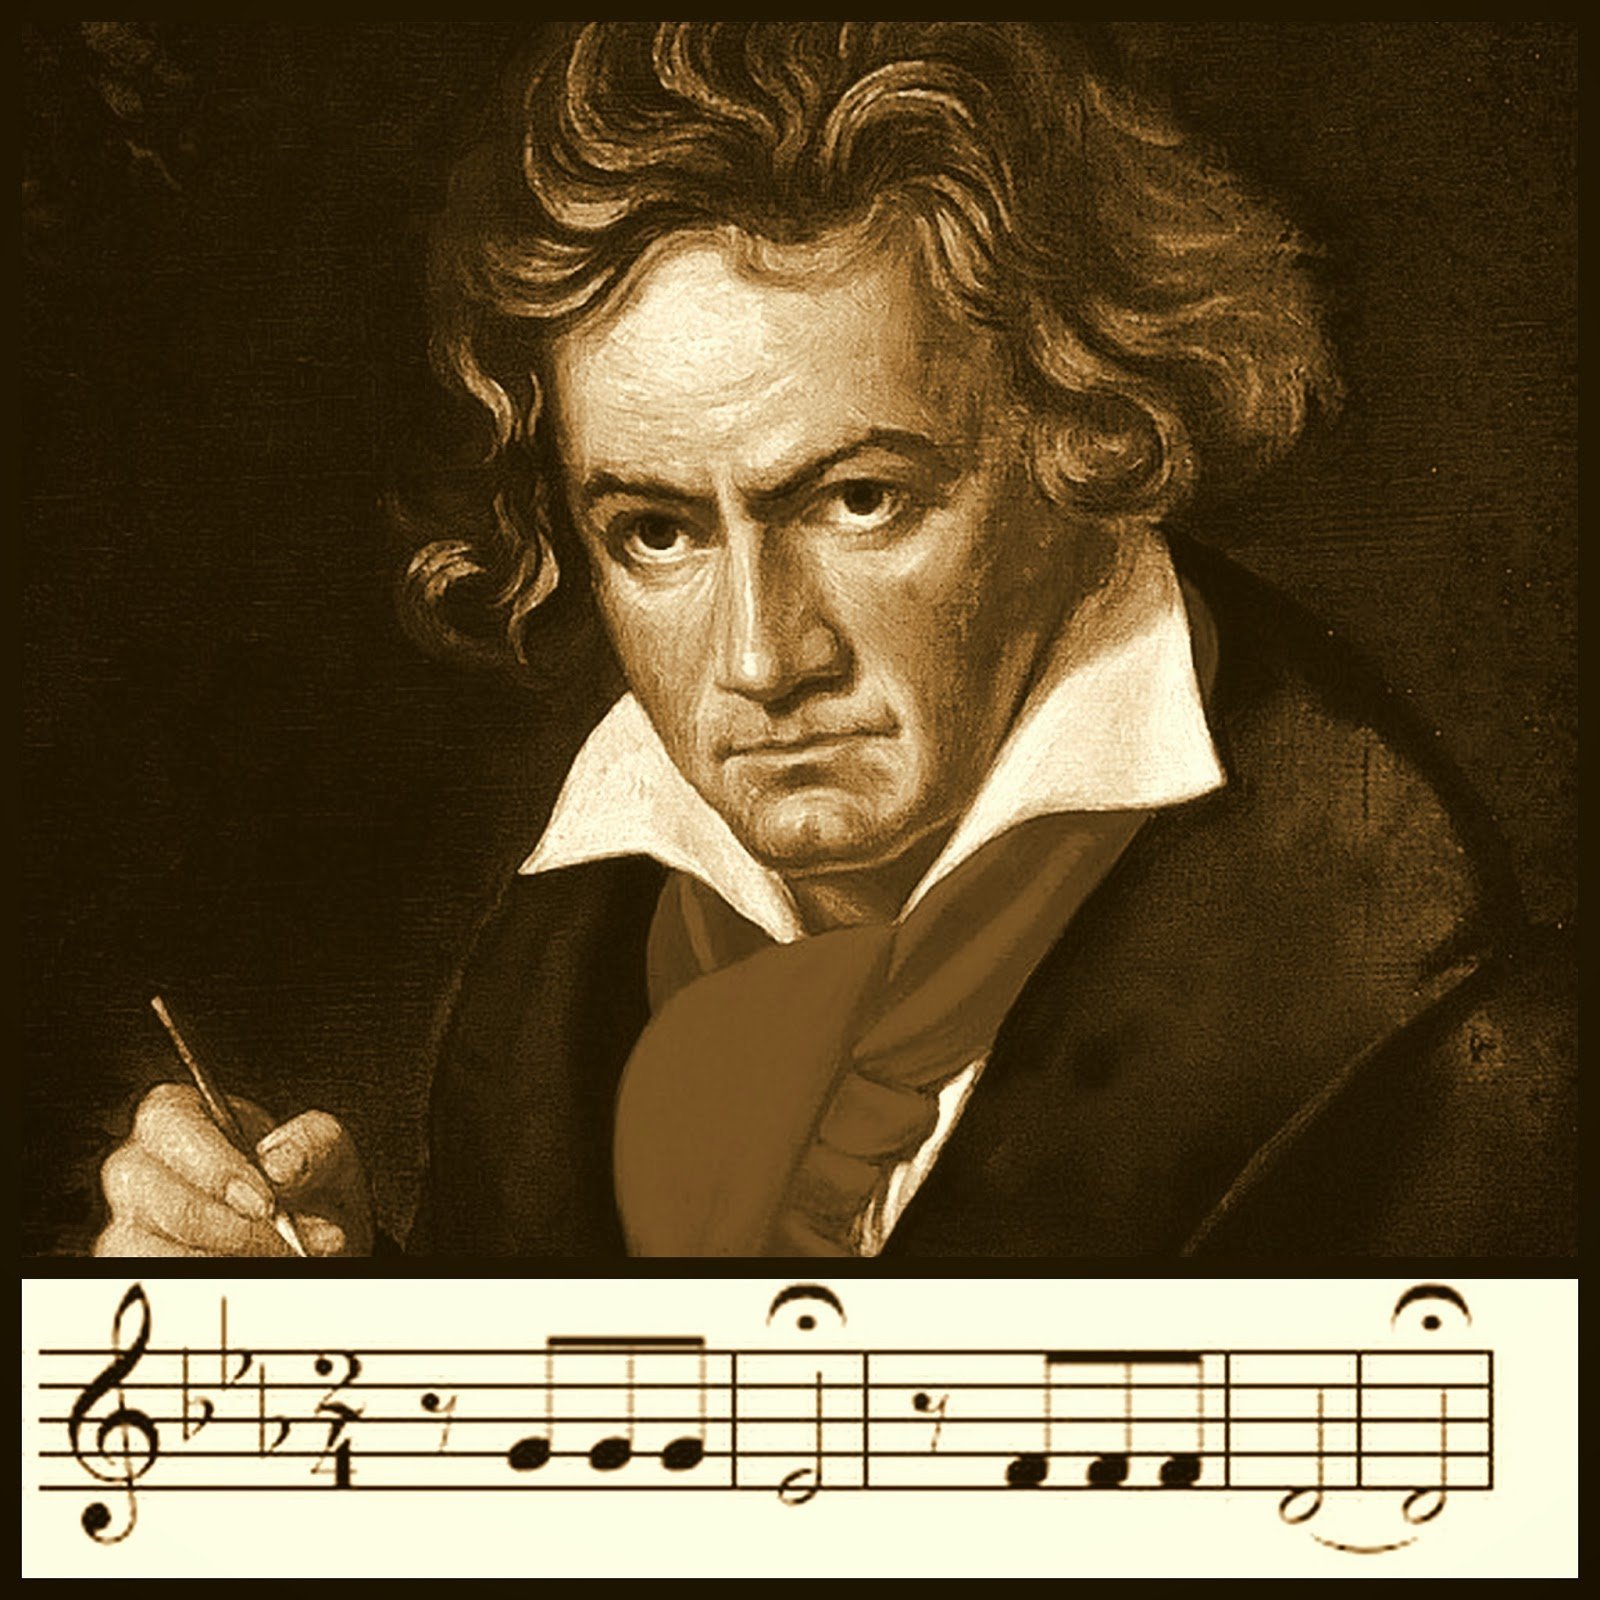 Бетховен дирижирует